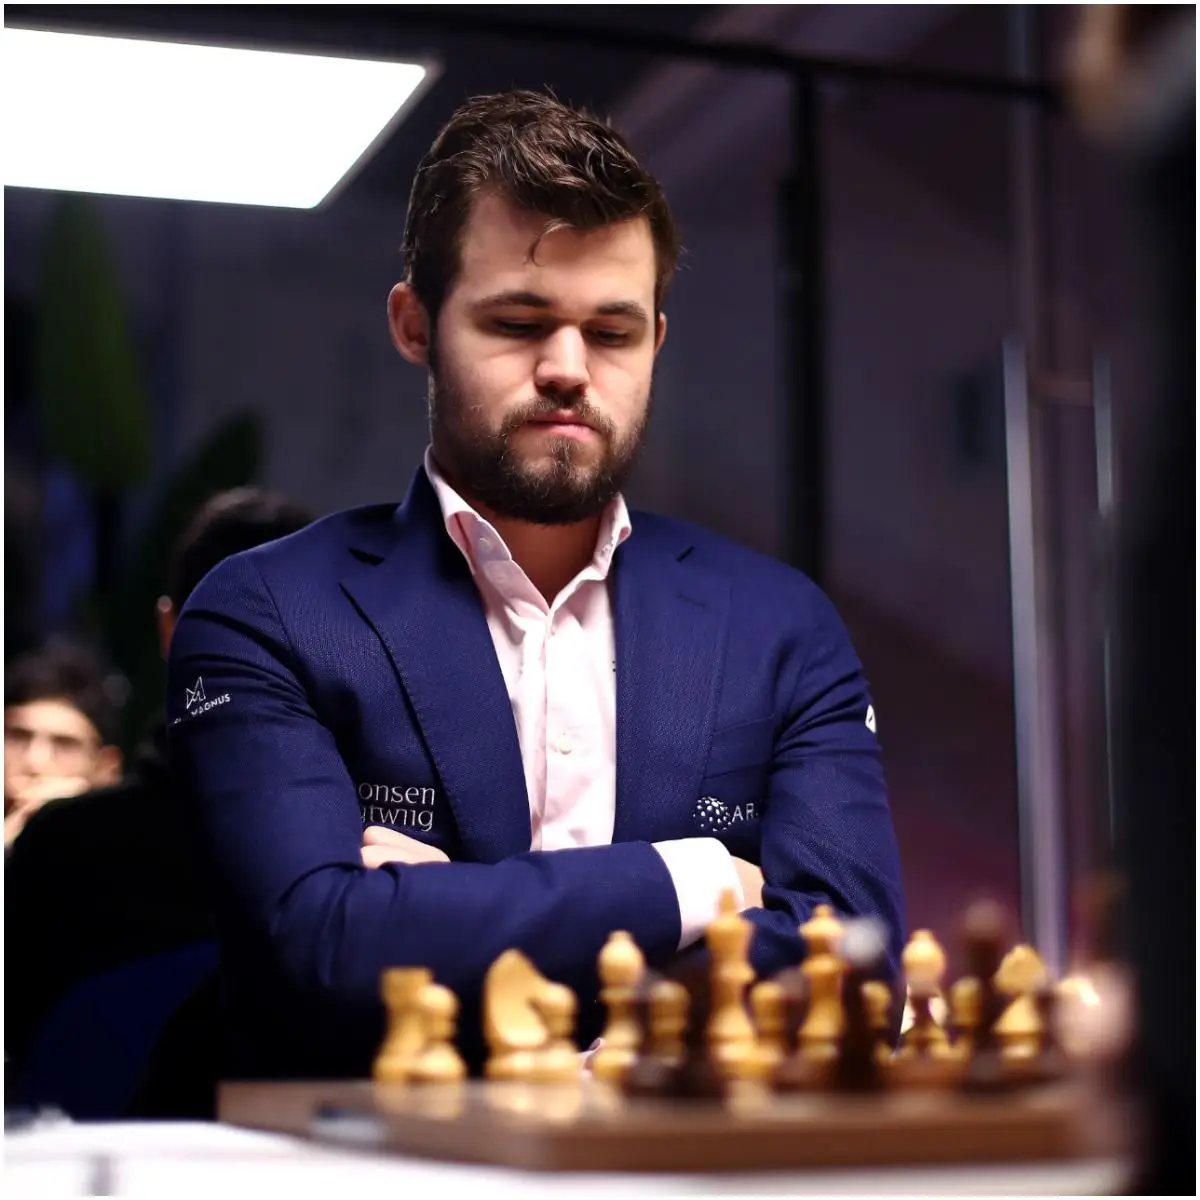 Magnus Carlsen's IQ: जानिए चैस के बादशाह